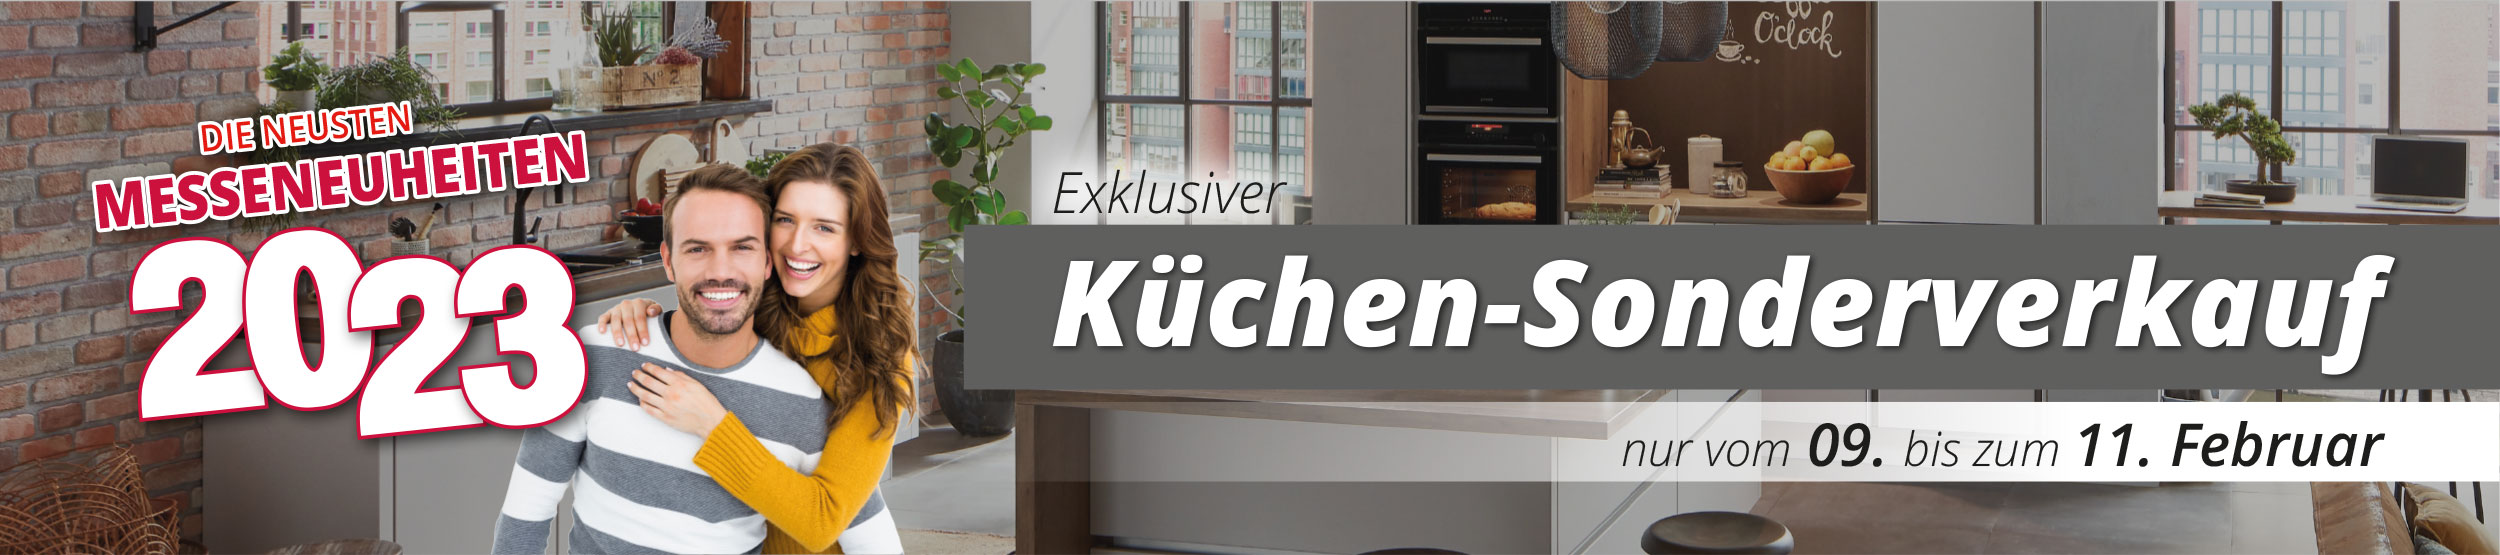 Die neusten Messeneuheiten | Exklusiver Küchen-Sonderverkauf vom 09. - 11. Februar